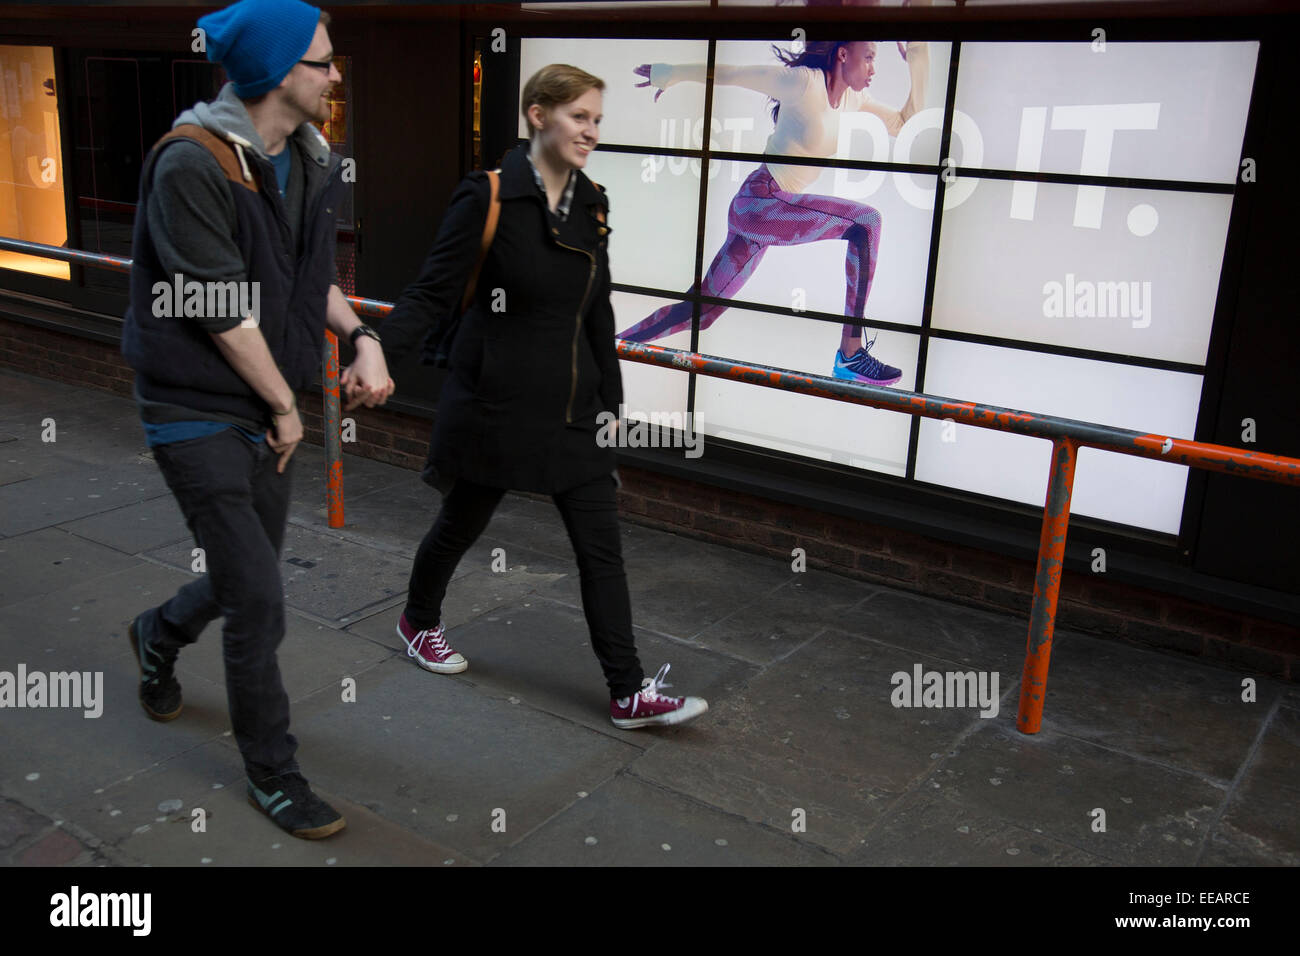 Nike Werbung Läufer läuft entlang ein Hindernis in der Nähe von  ahnungslosen Menschen. Die video Anzeige mit dem Slogan "Just Do It" mit  einer Frau, die quer über des Bildschirms sorgt für